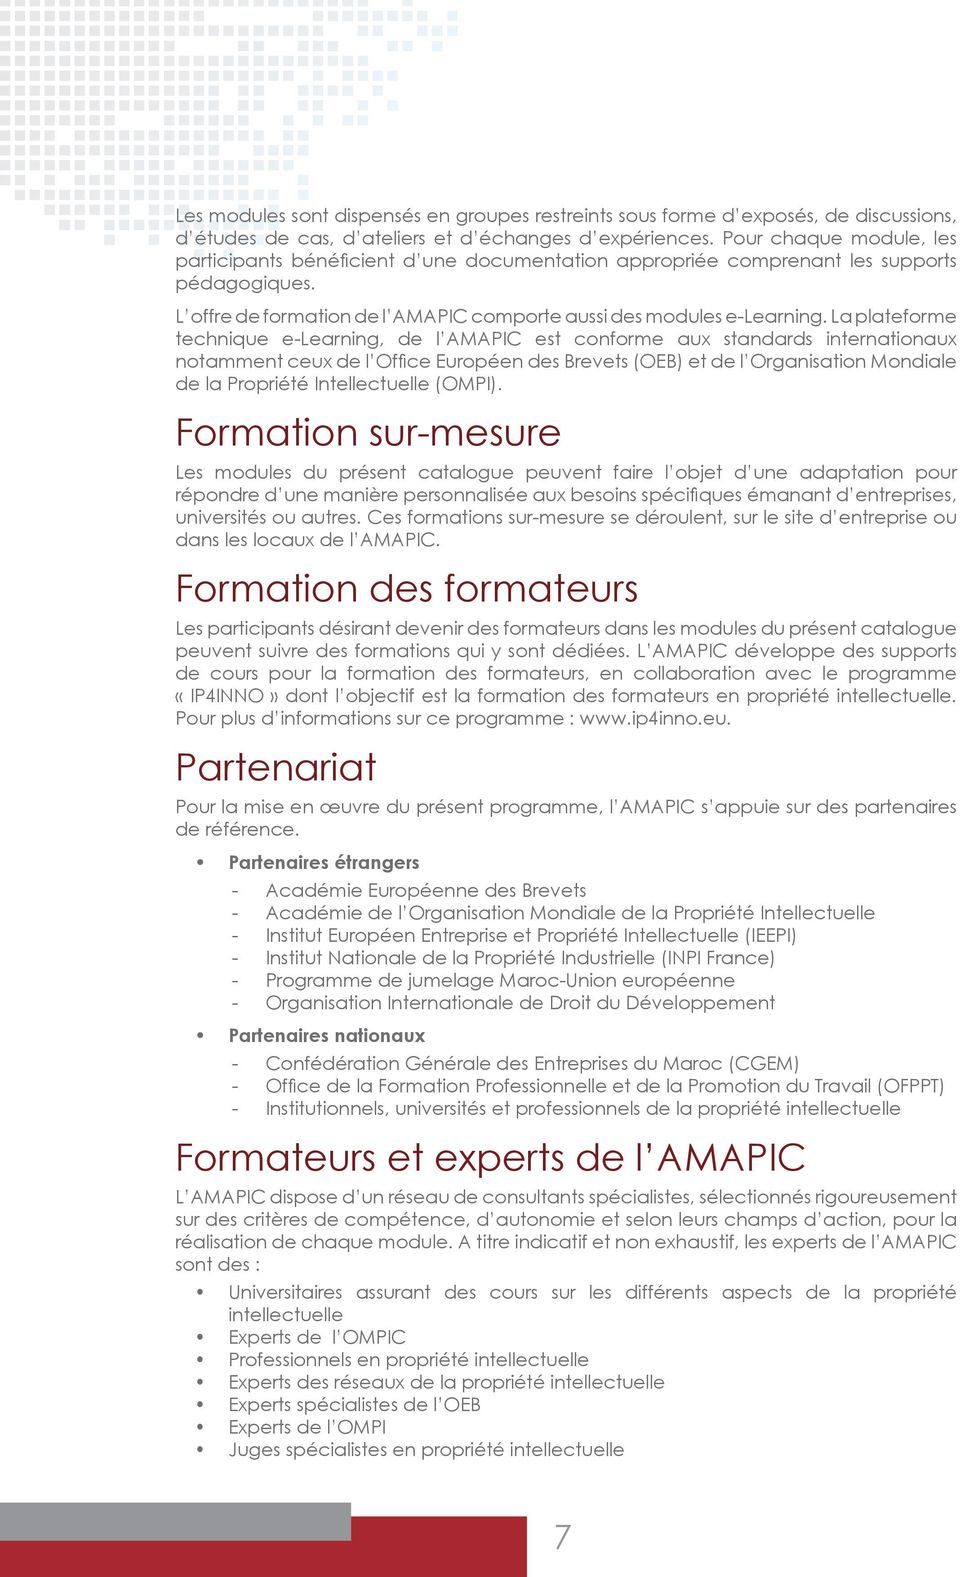 La plateforme technique e-learning, de l AMAPIC est conforme aux standards internationaux notamment ceux de l Office Européen des Brevets (OEB) et de l Organisation Mondiale de la Propriété